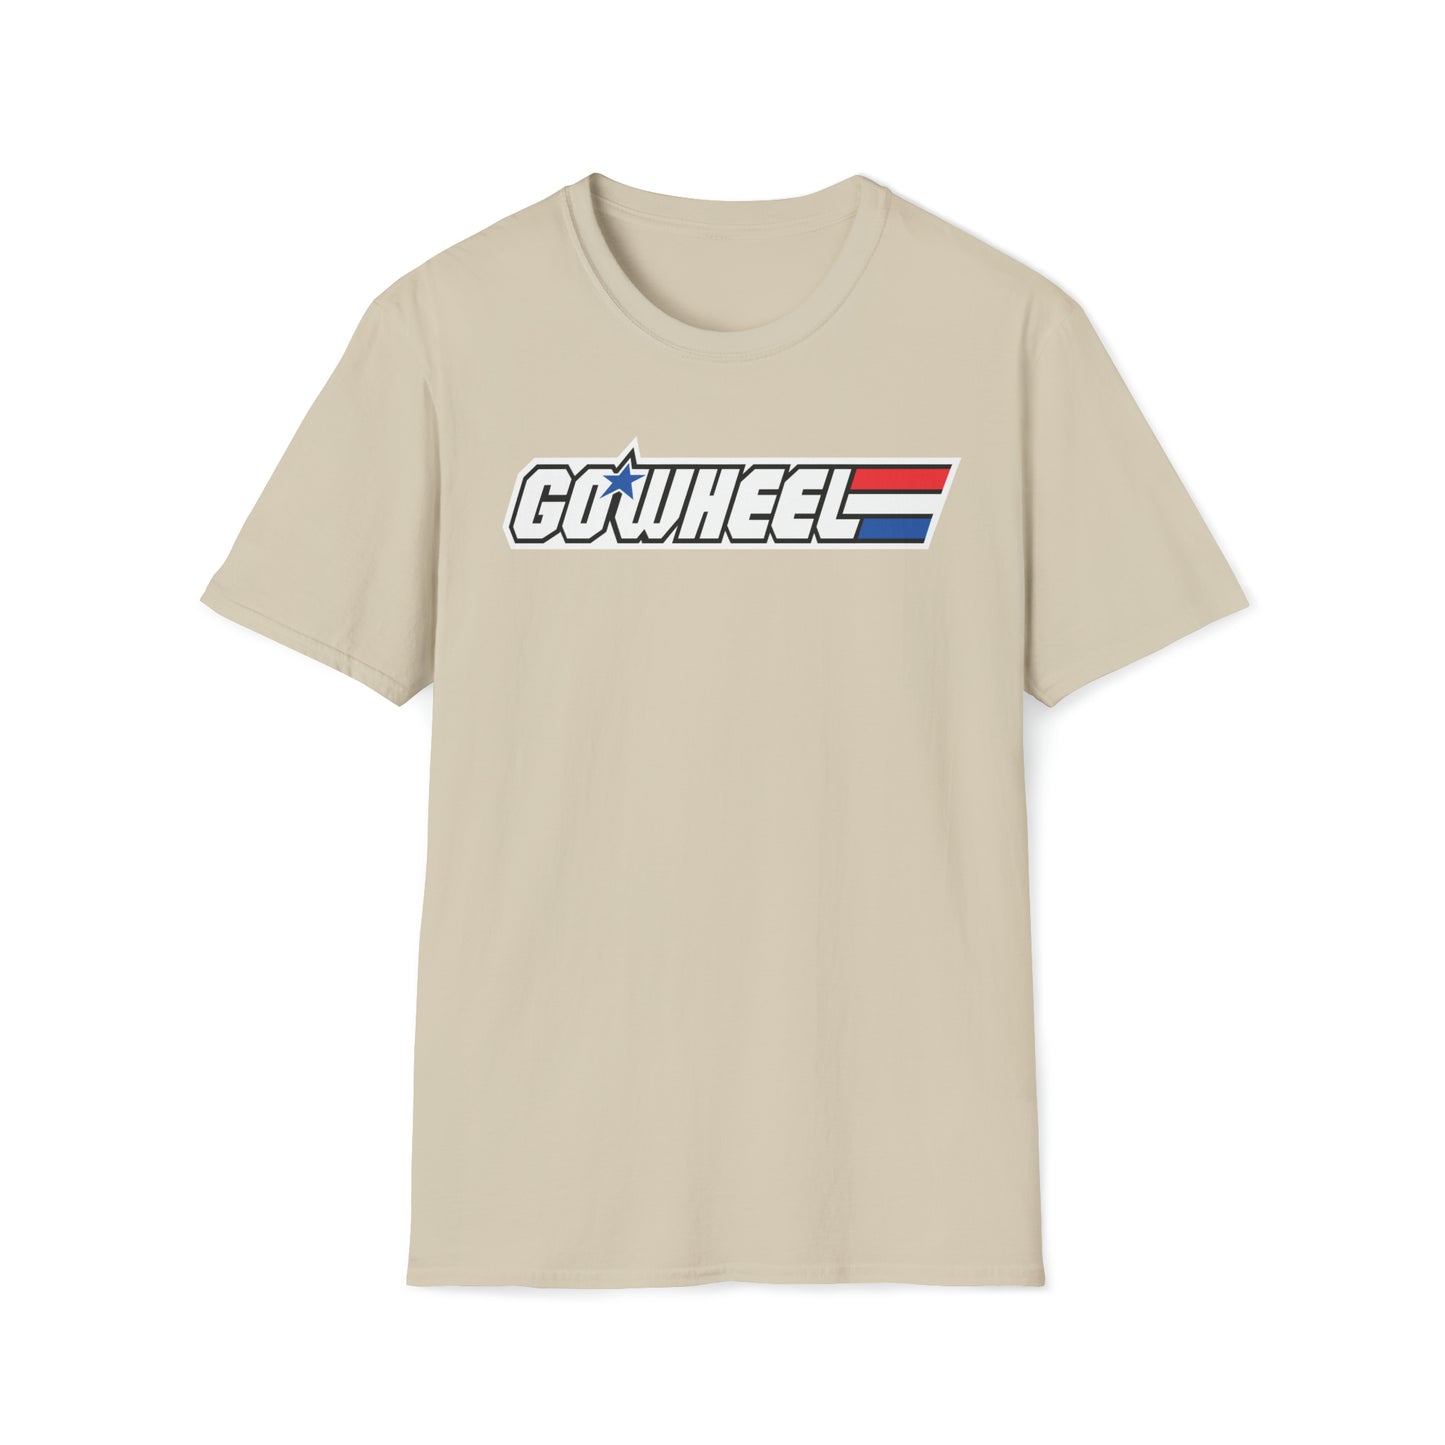 Go Wheel Unisex Softstyle T-Shirt